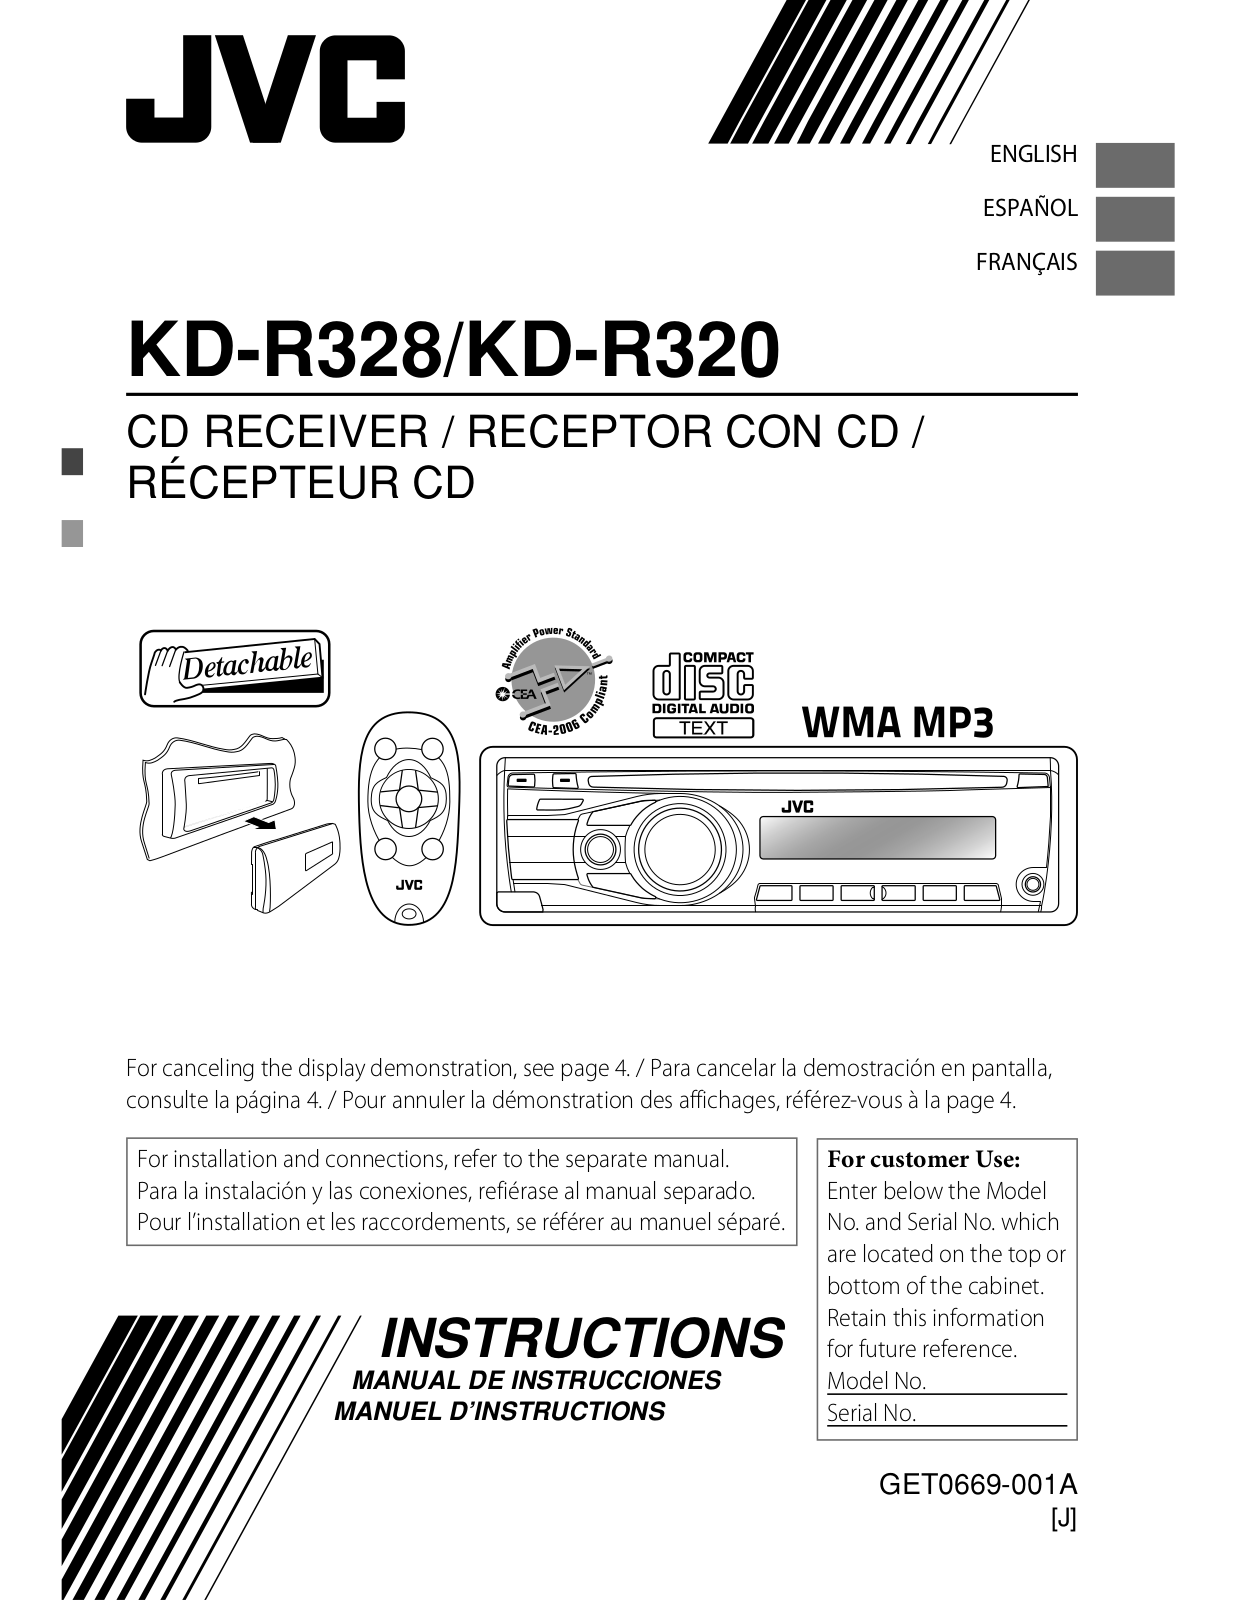 Jvc KD-R328, KD-R320 User Manual